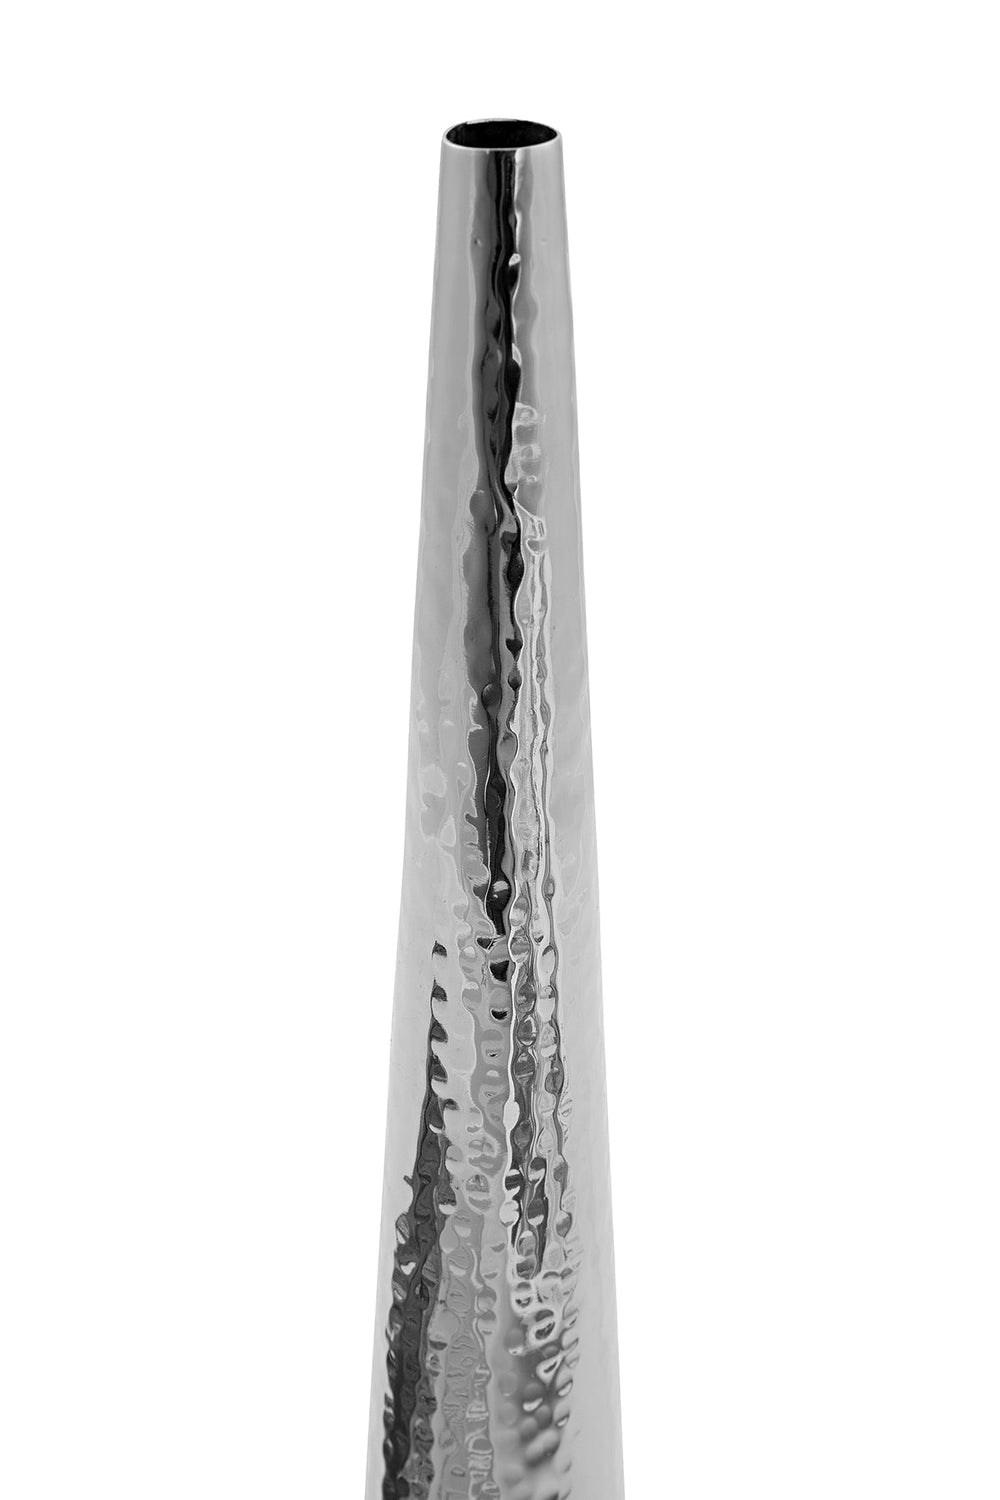 CUBA - Vase gehämmert - Edelstahl 36cm, Fink-FINK-157001